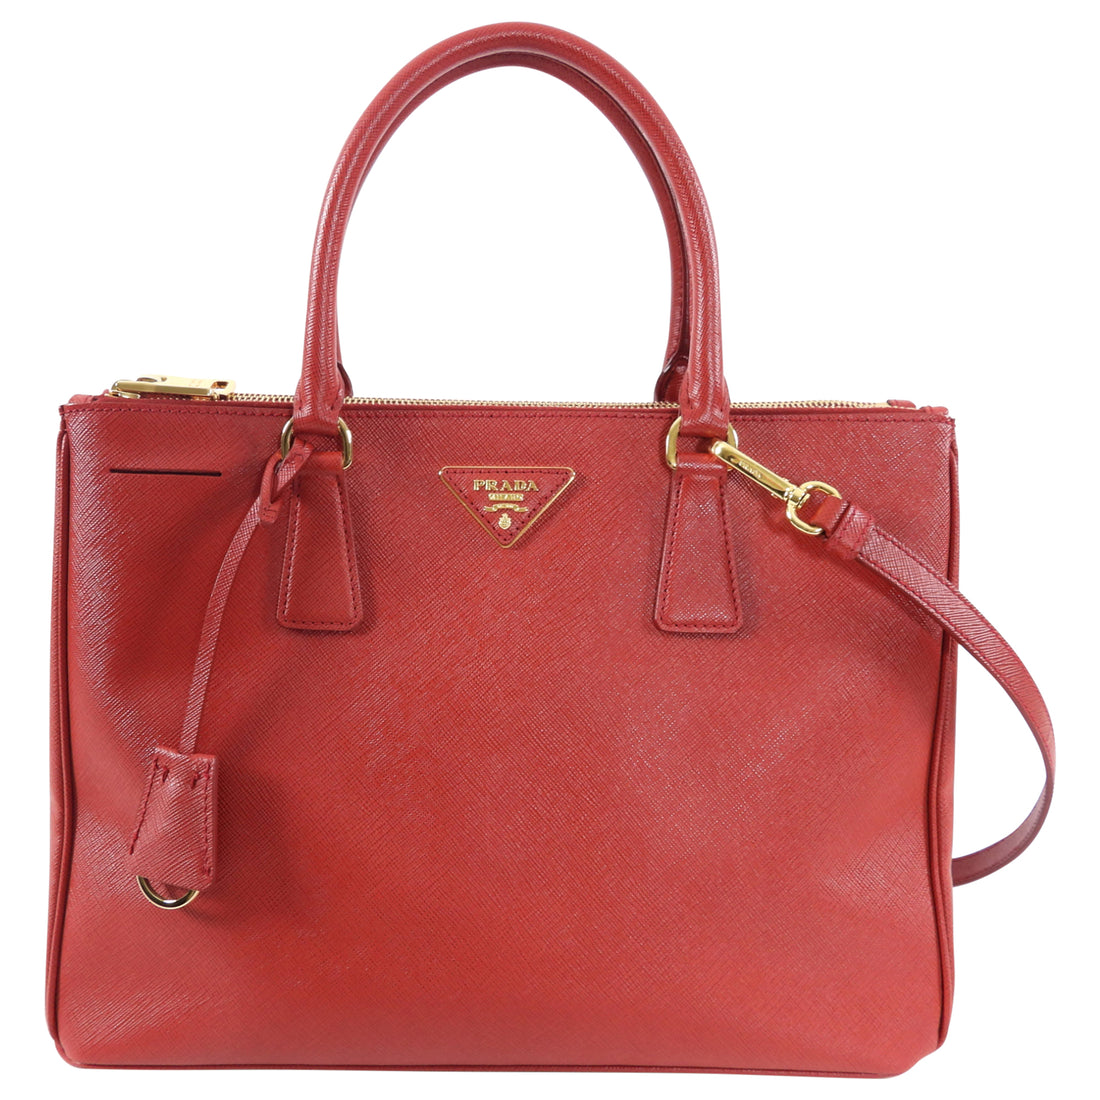 Prada Red Medium Galleria Double Zip Tote Bag